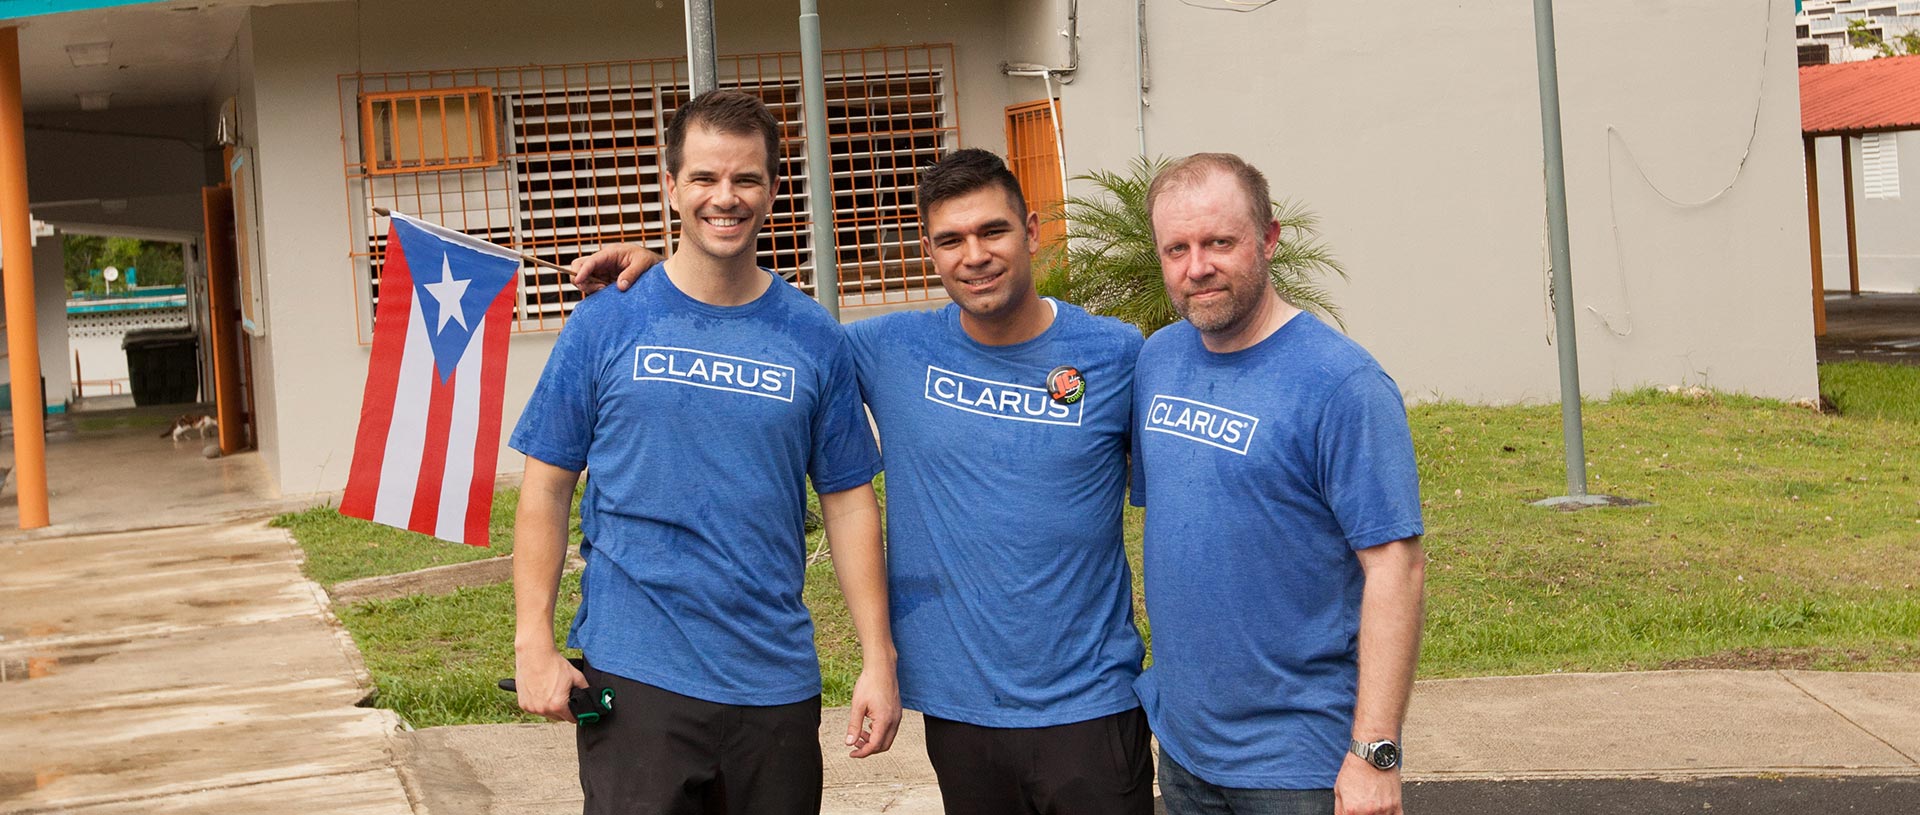 Clarus Care Team Image